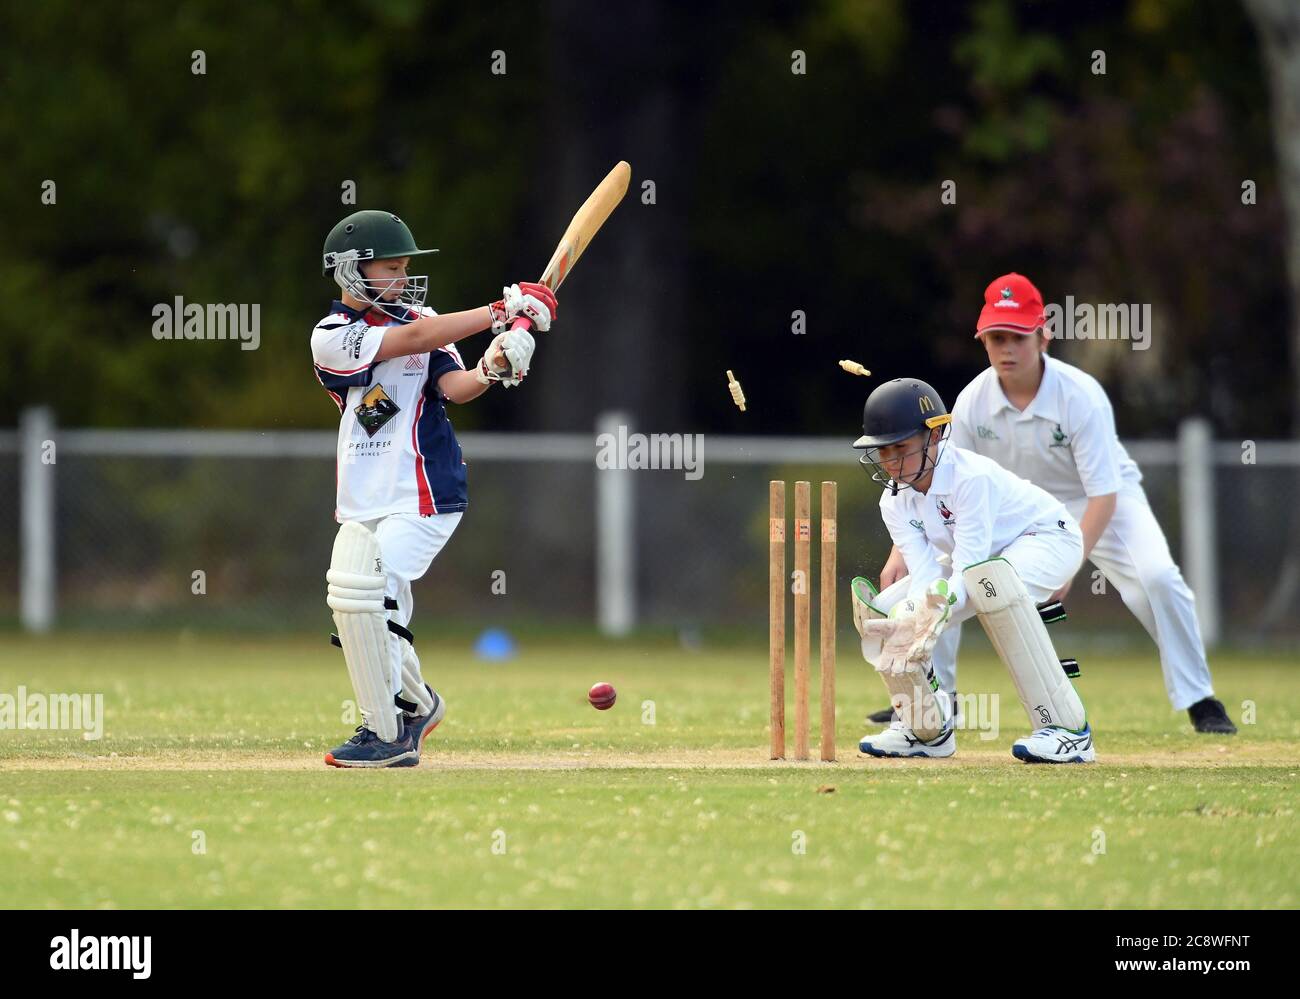 Las velas vuelan por encima de los tocones mientras un jugador de cricket se agamora durante un partido de críquet de menos de 16 años en Victoria, Australia Foto de stock